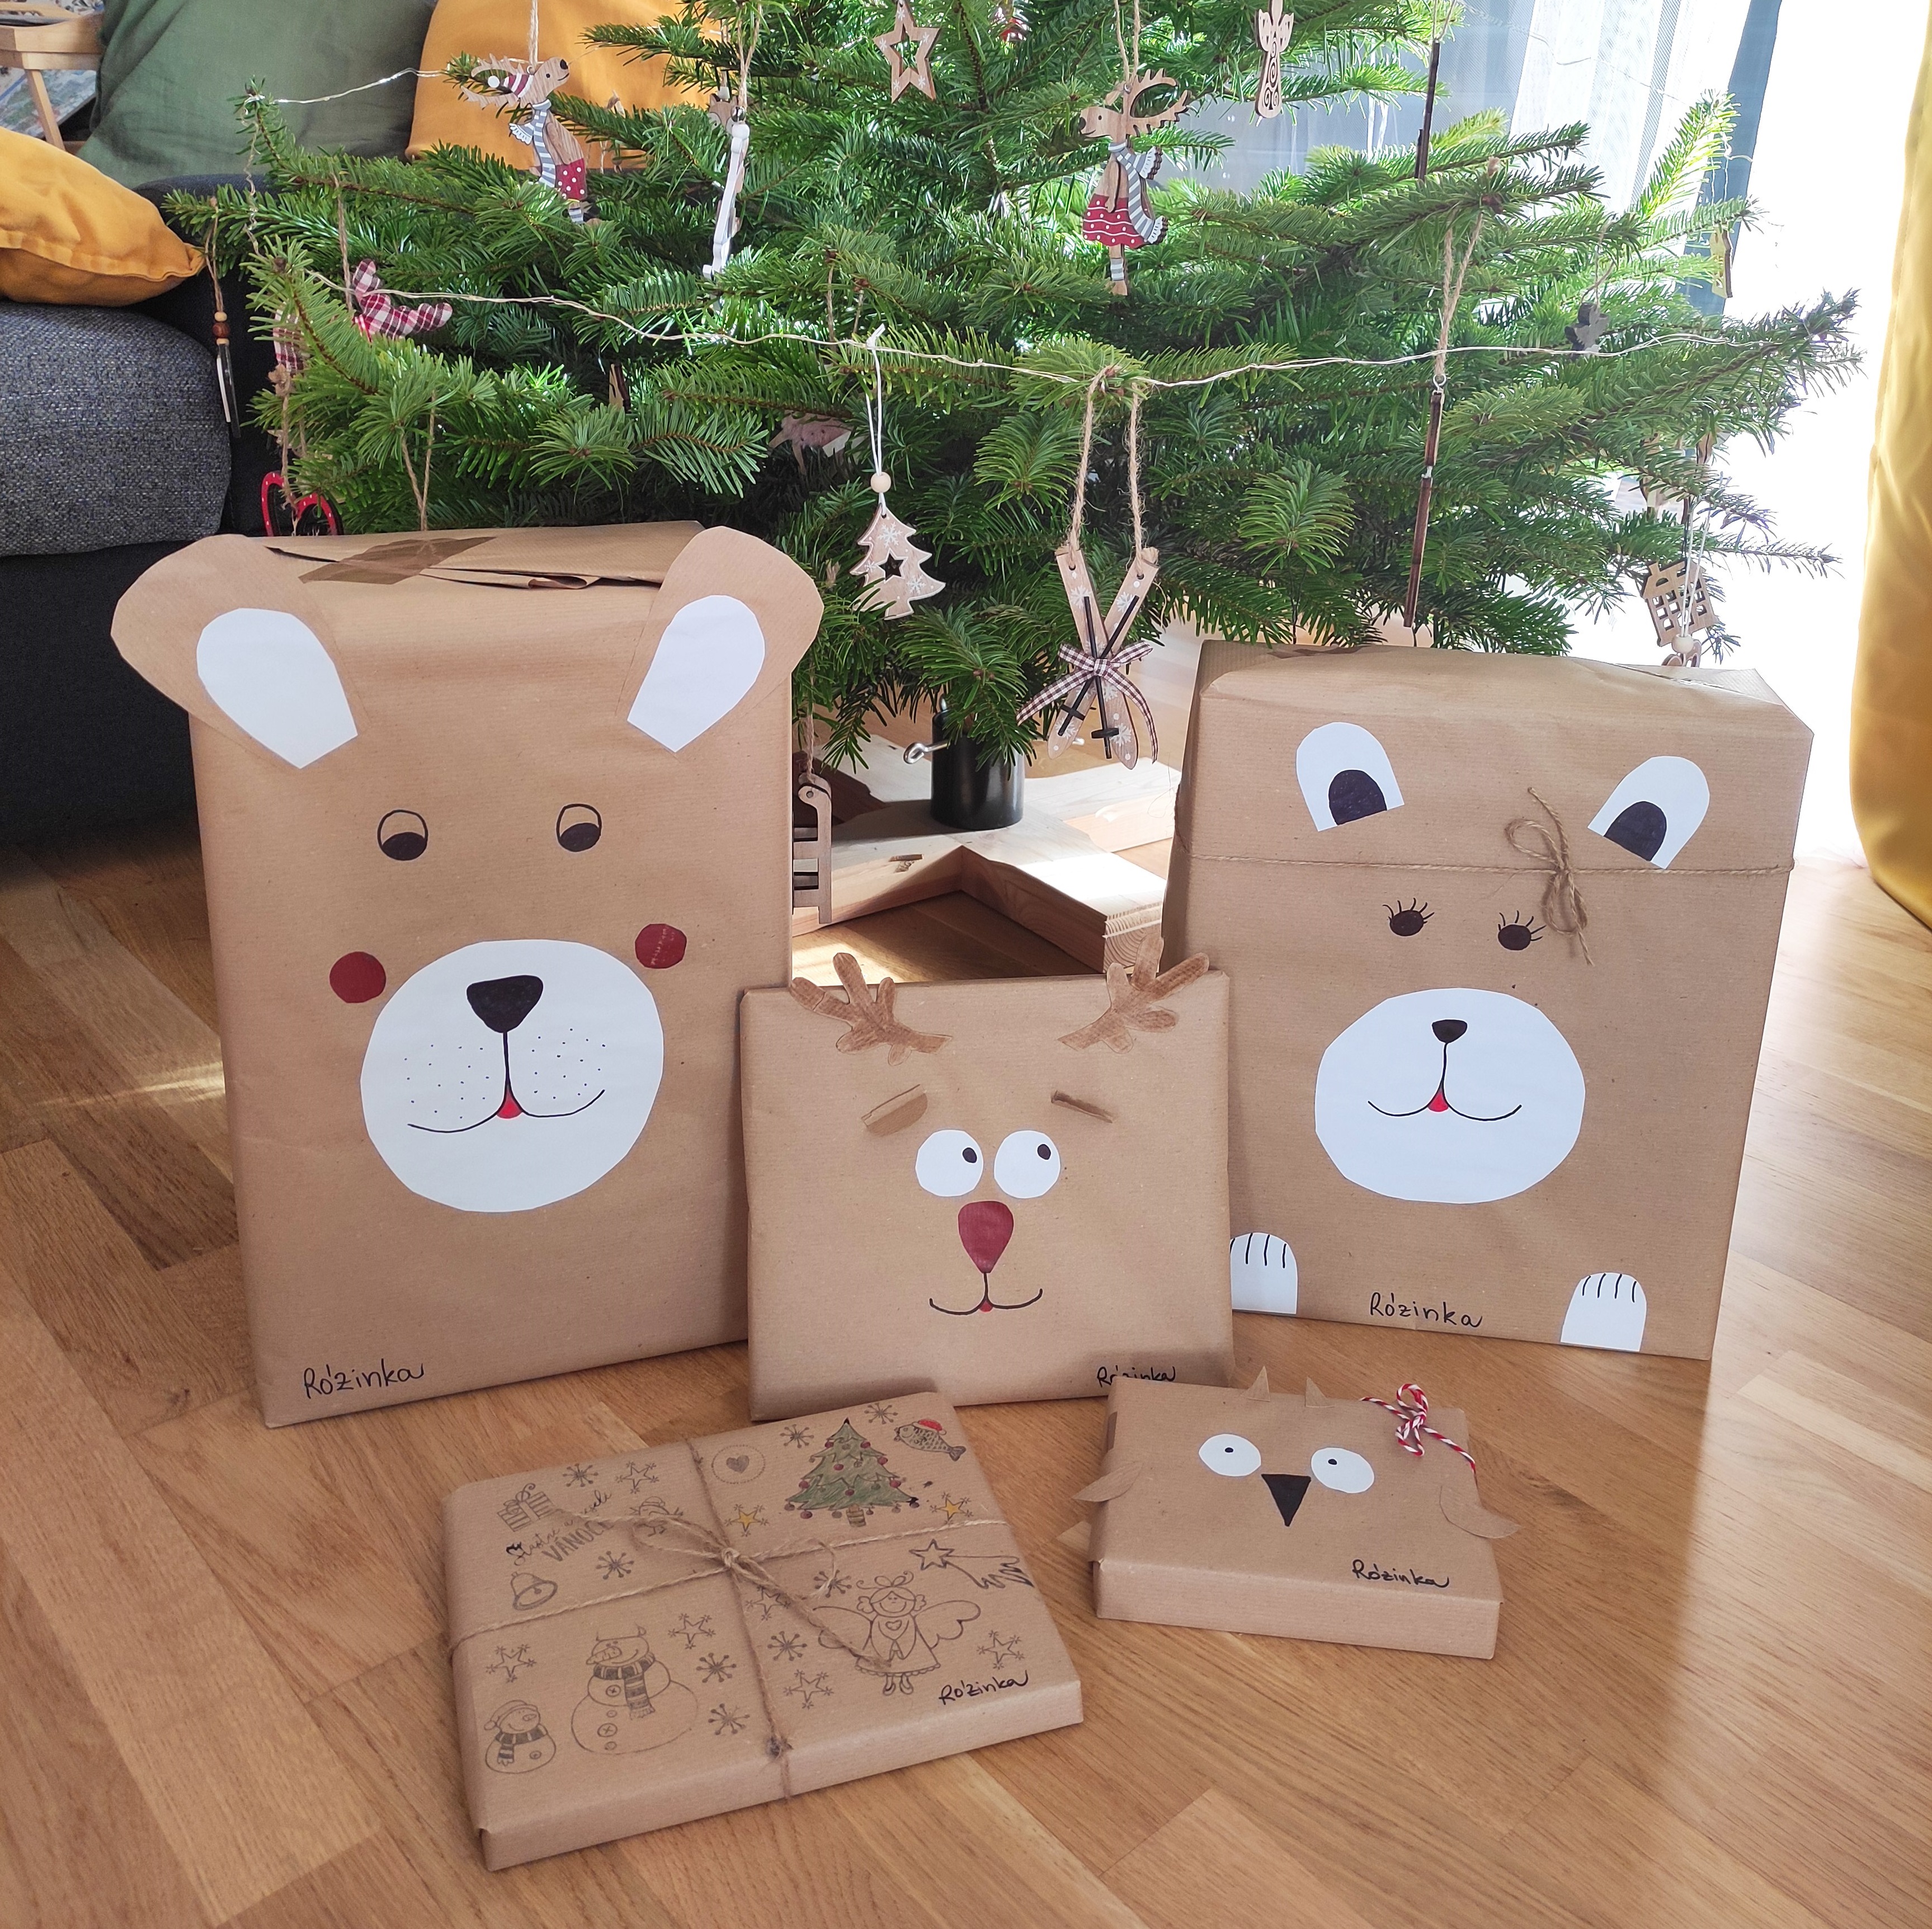 Come incartare i regali di Natale? Come fare dei pacchetti carini?